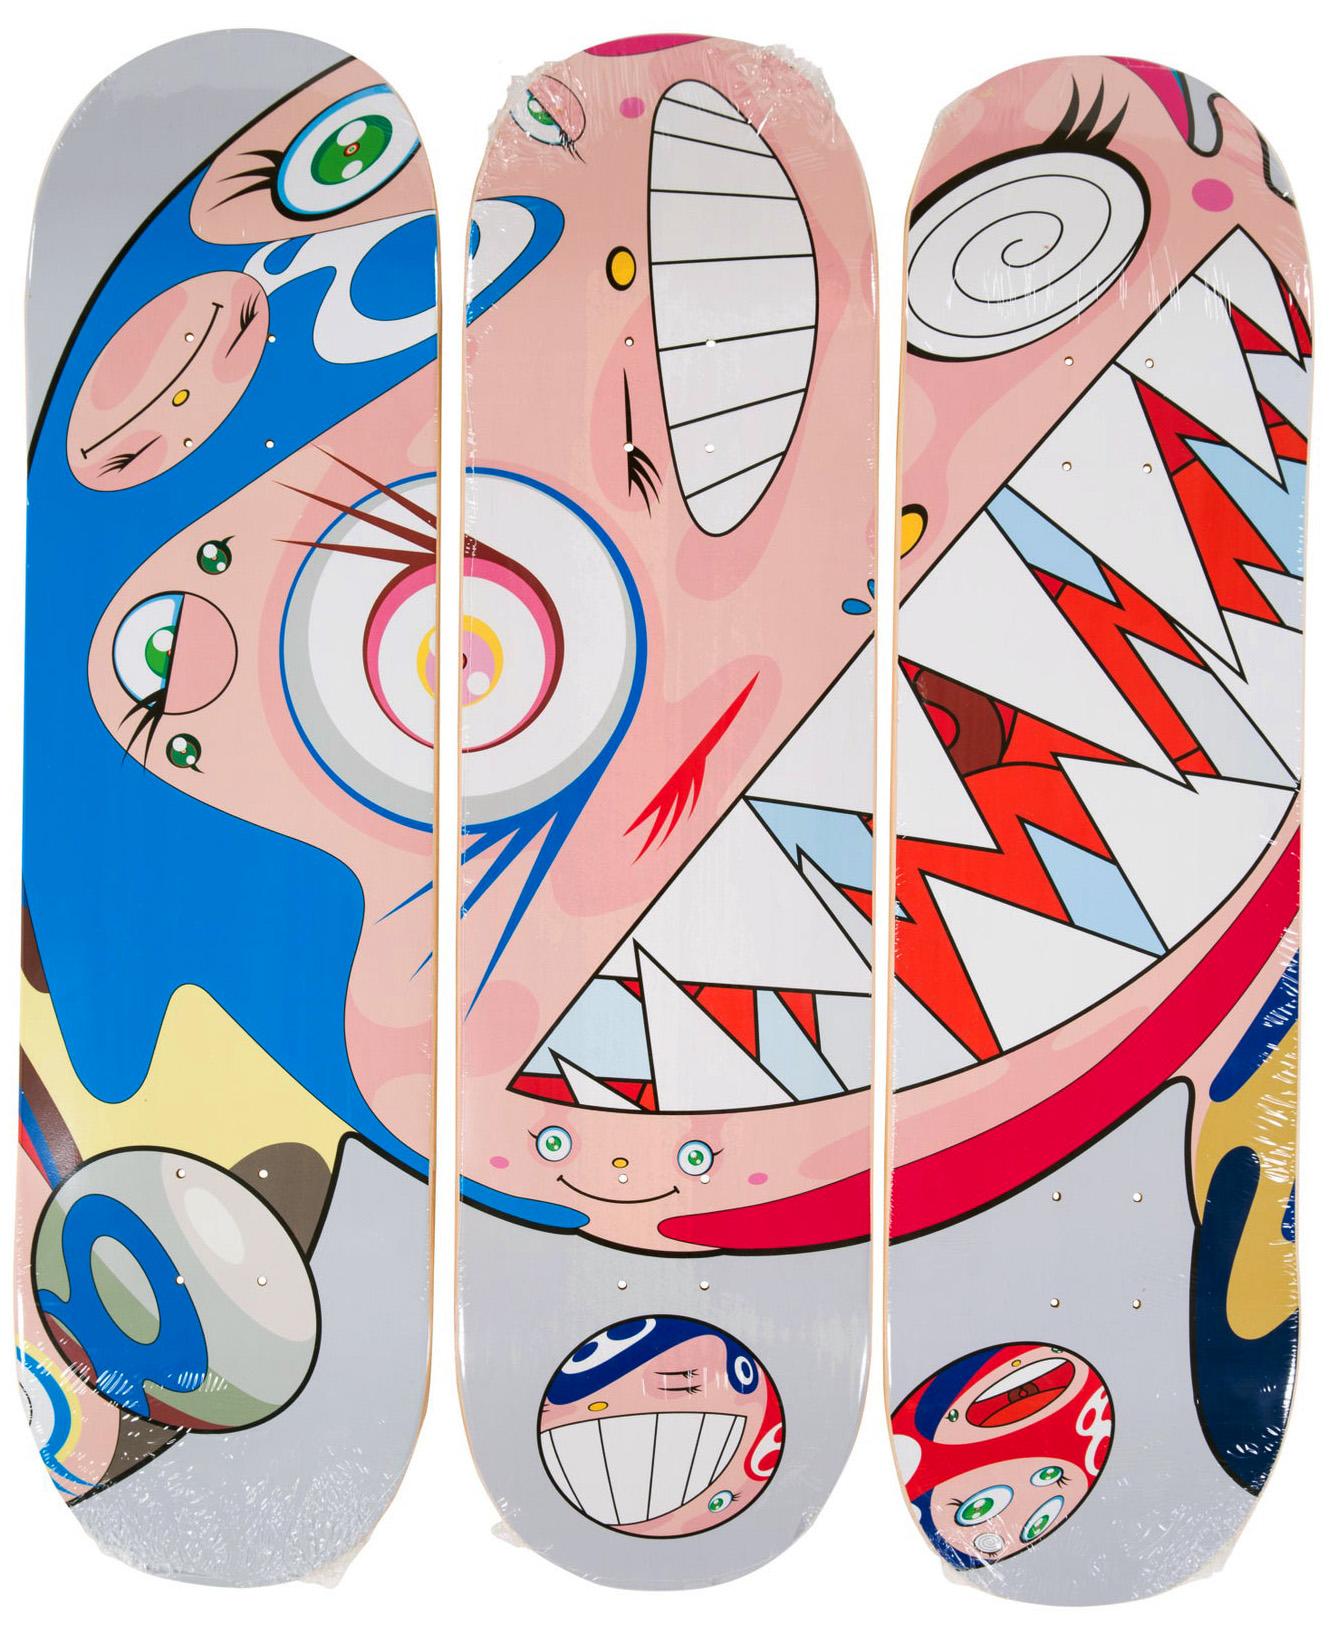 Takashi Murakami DOB Skateboard Deck Triptychon 2018:
Ein hochdekoratives Skateboard-Set/Triptychon von Takashi Murakami, das sich mit Leichtigkeit aufhängen lässt und ein lebendiges Unikat an der Wand darstellt. Die Werke zeigen Takashi Murakamis